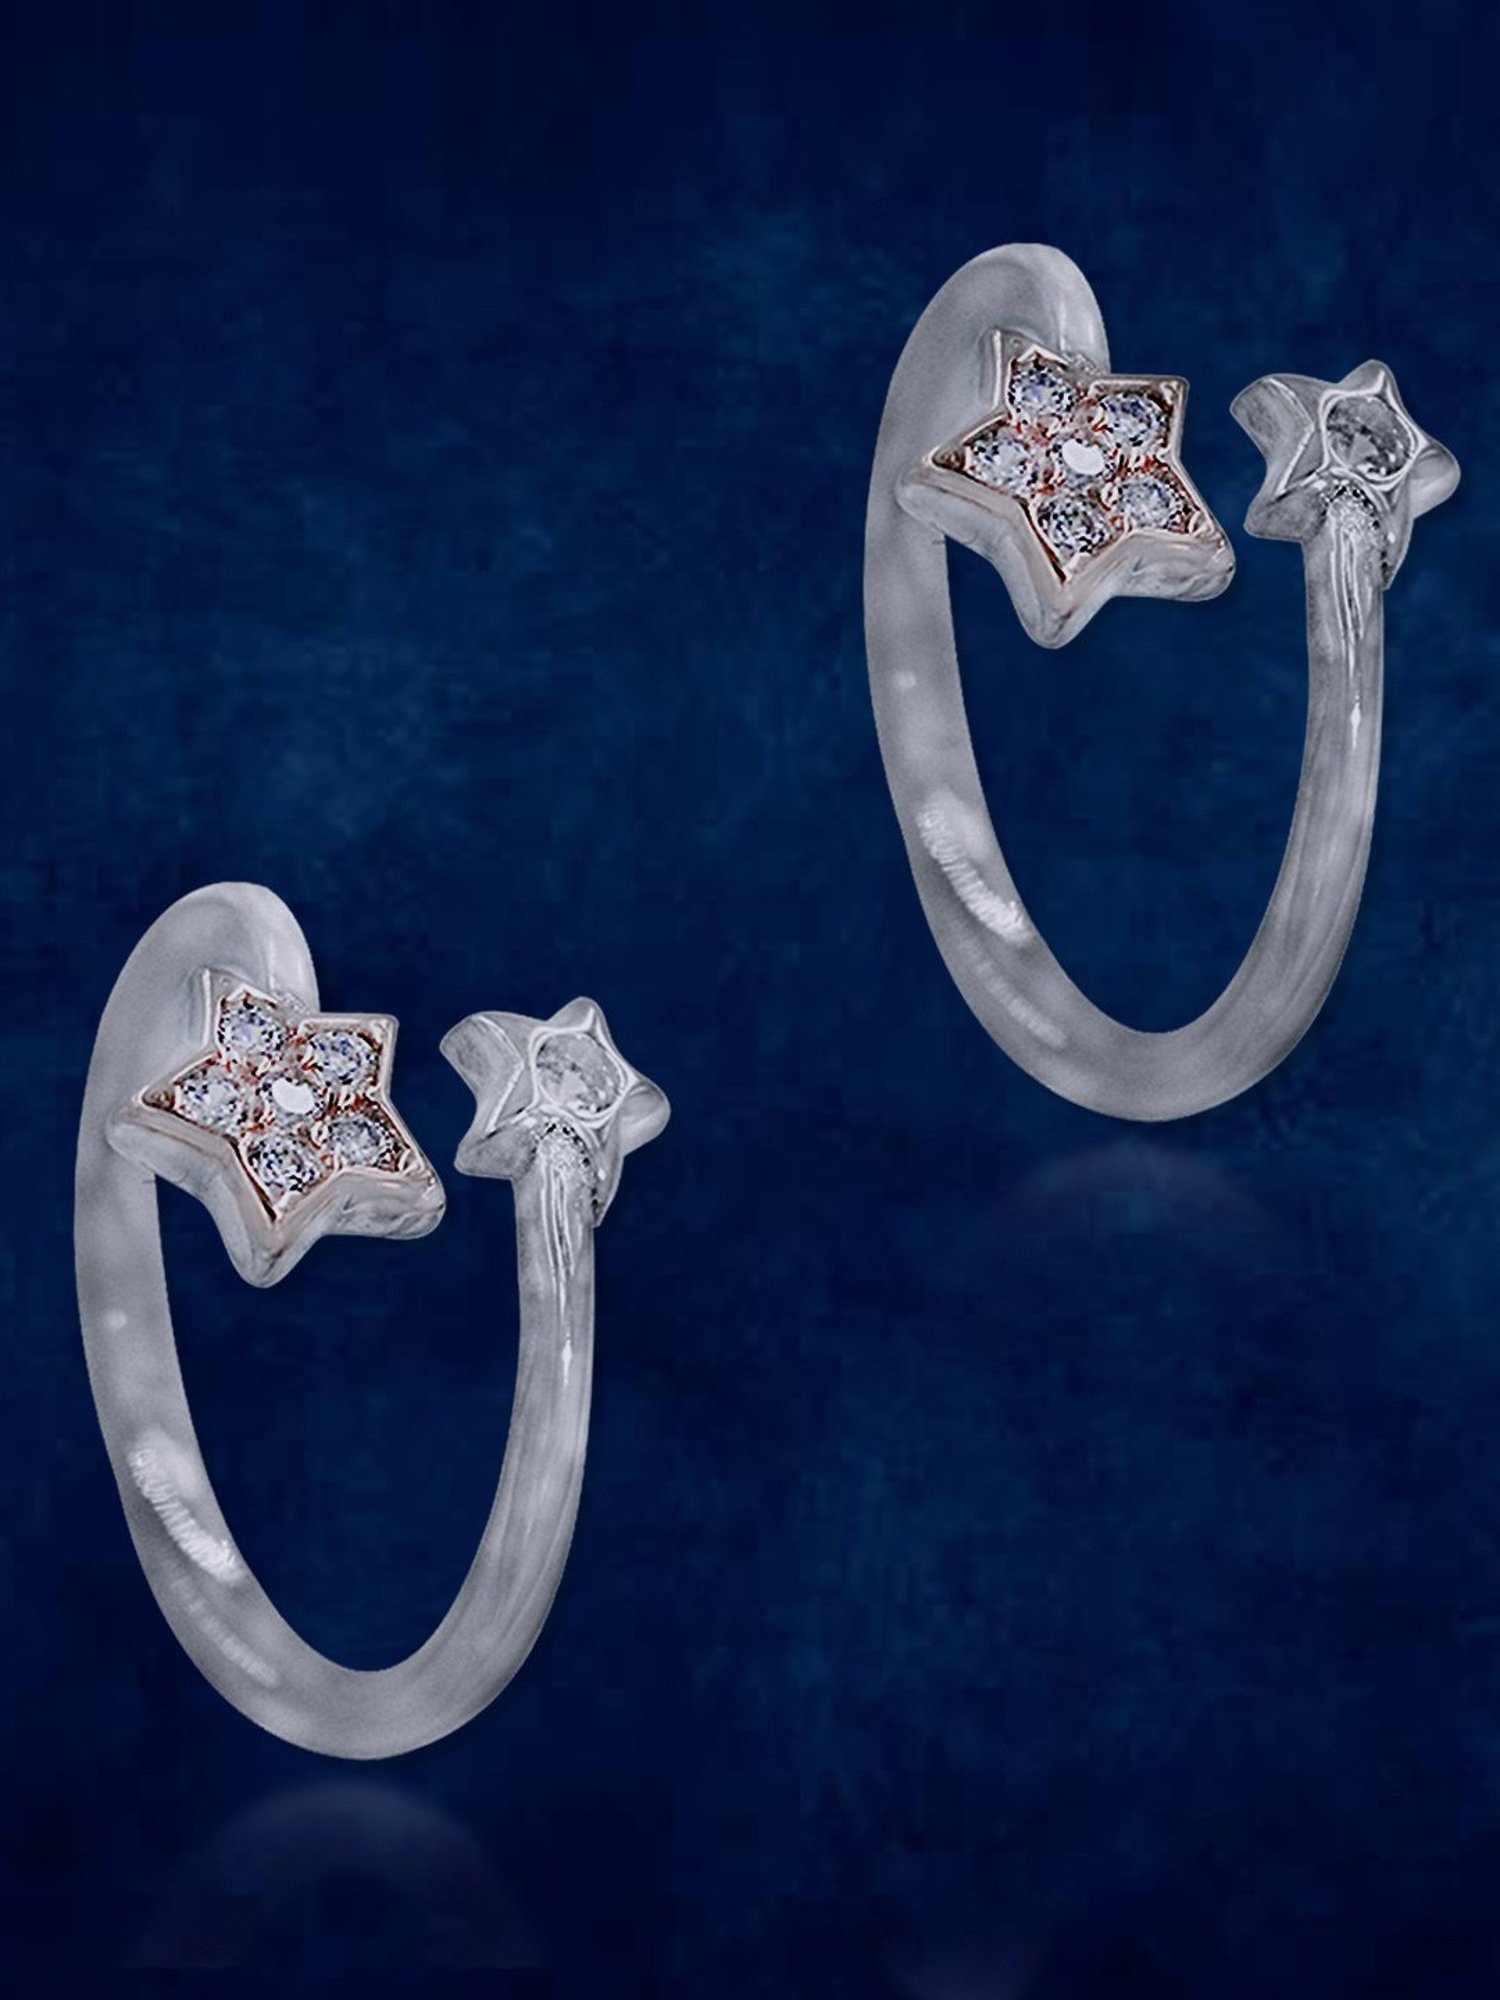 Silver Toe Ring, Silver Star Toe Ring, Star Toe Jewellery